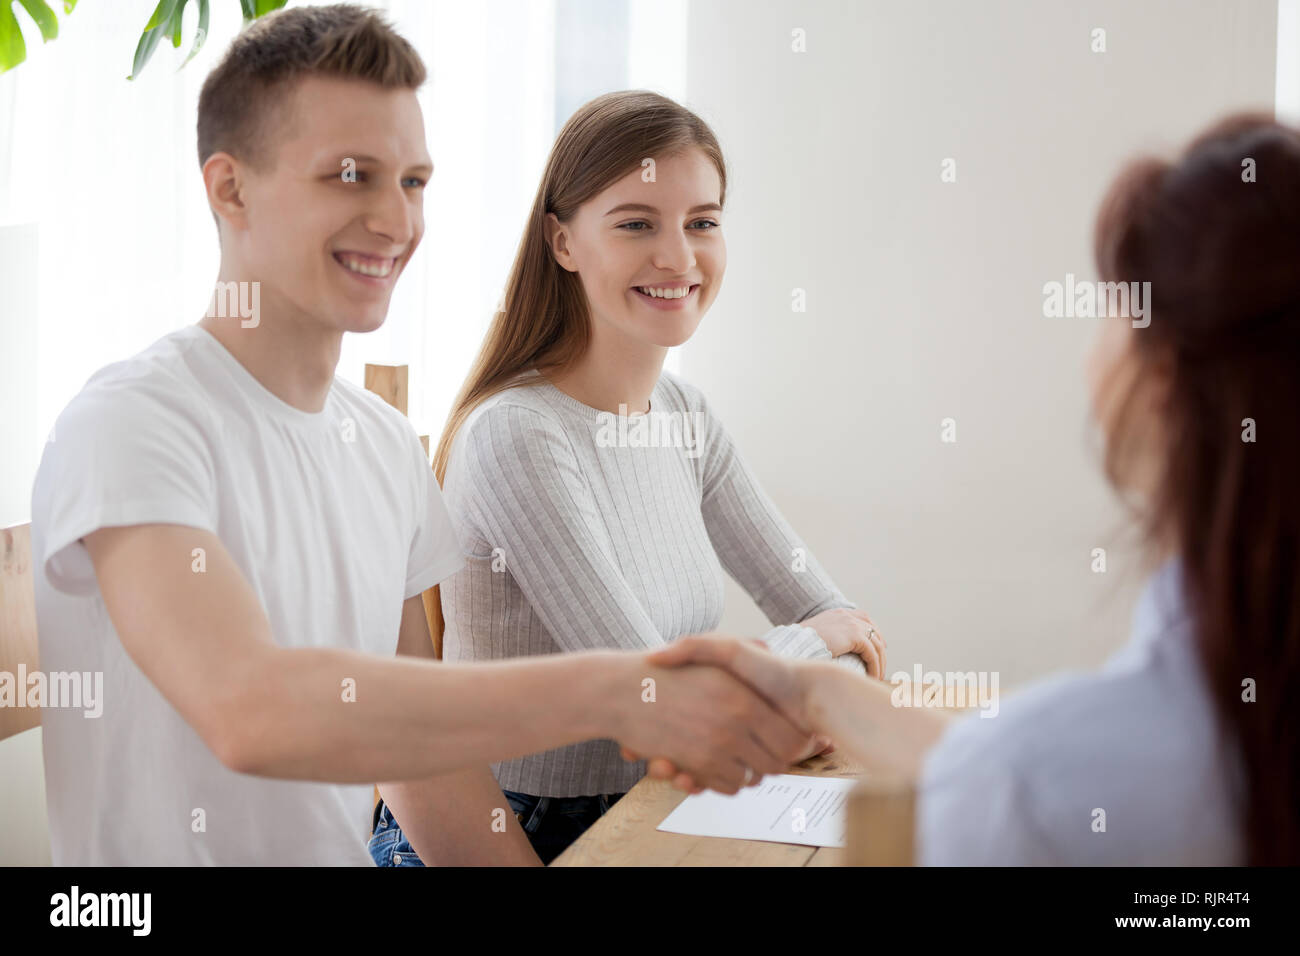 Glückliches Paar clients handshaking Versicherer Bank worker Advisor bei Konferenz Stockfoto